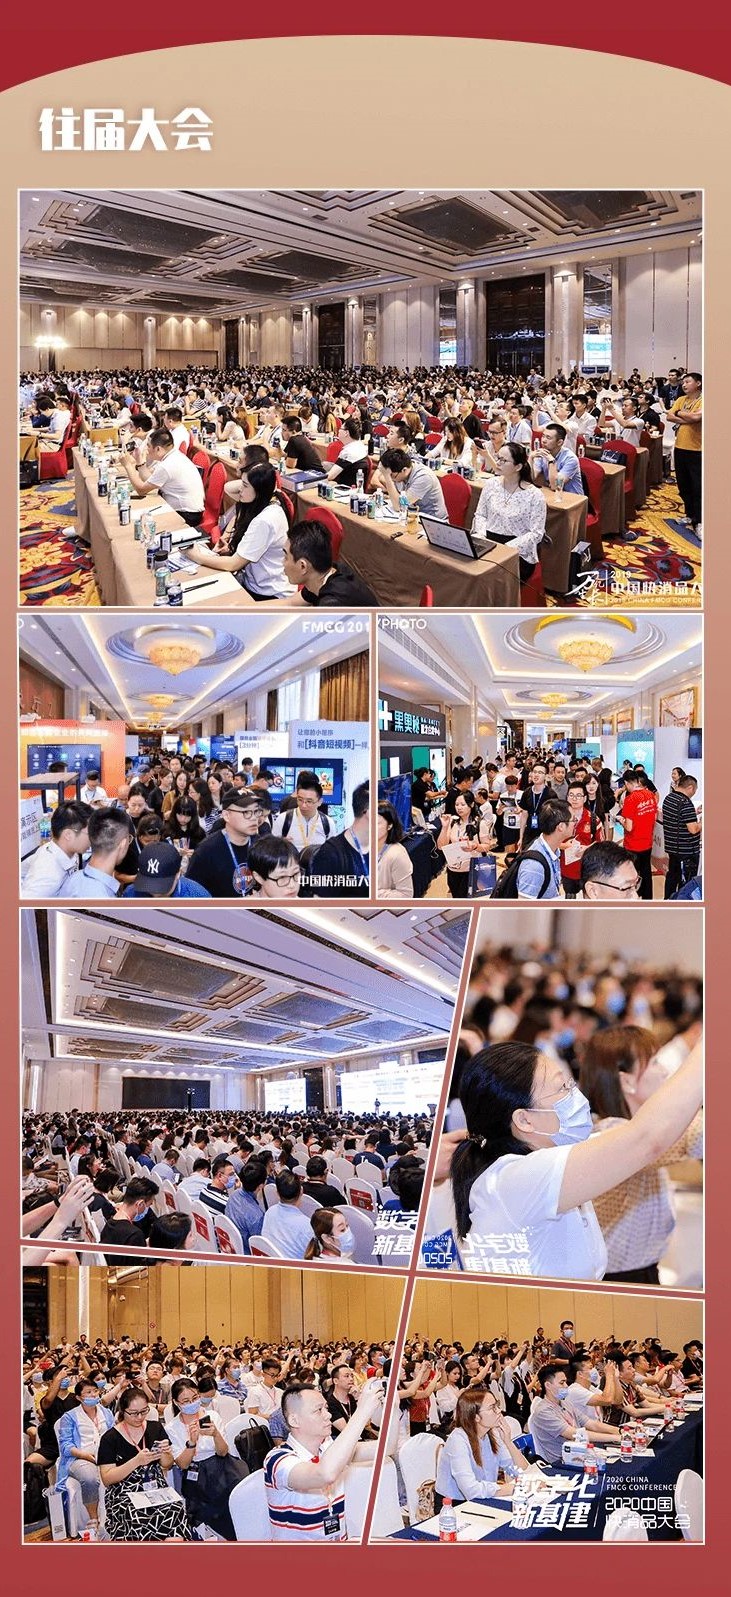 「恒安集团」确认参加中国快消品渠道创新大会